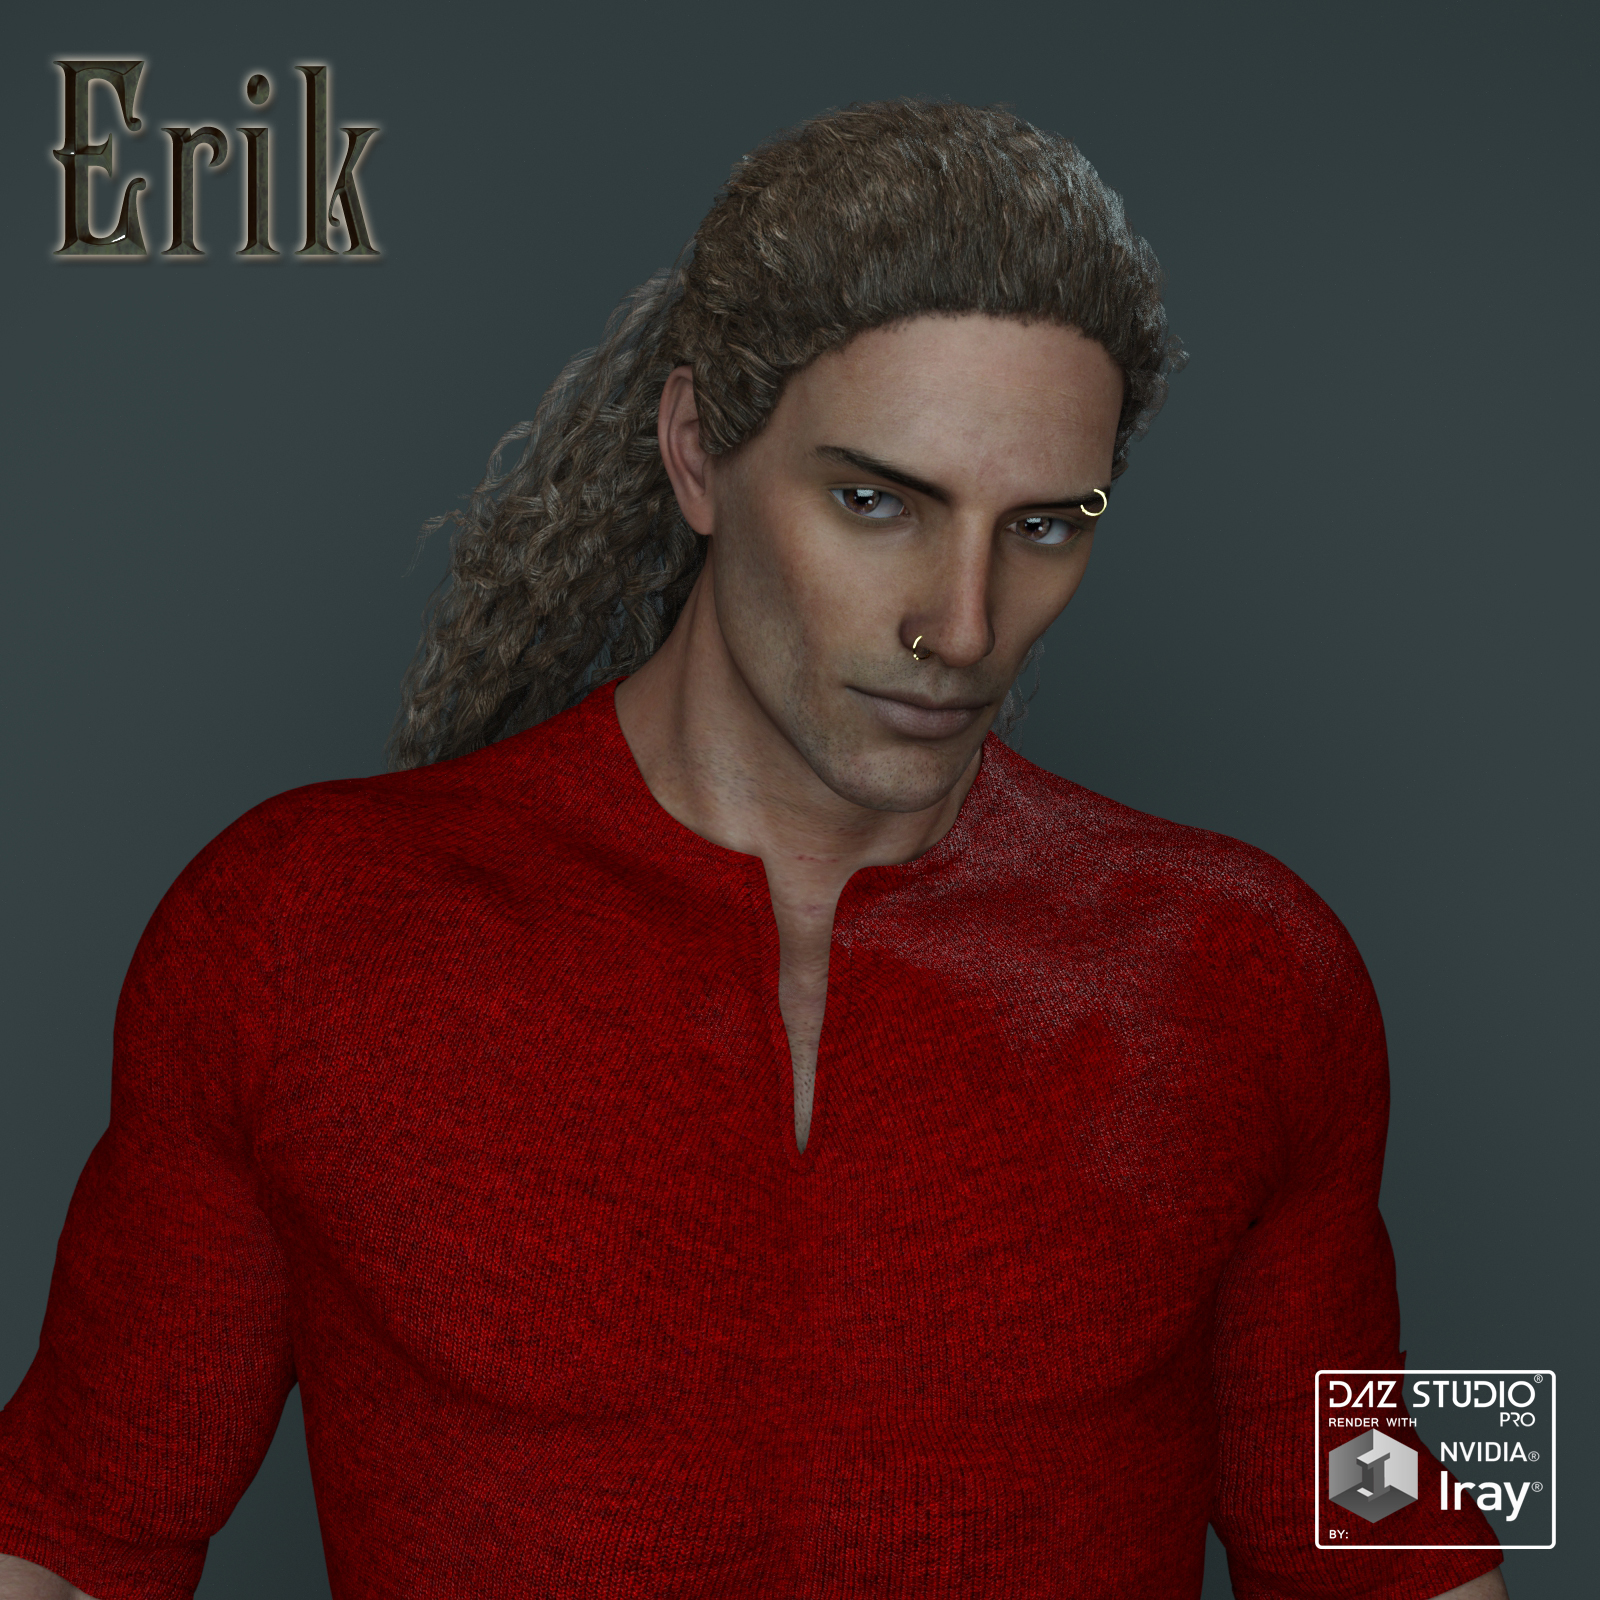 Erik for Genesis 3 Male